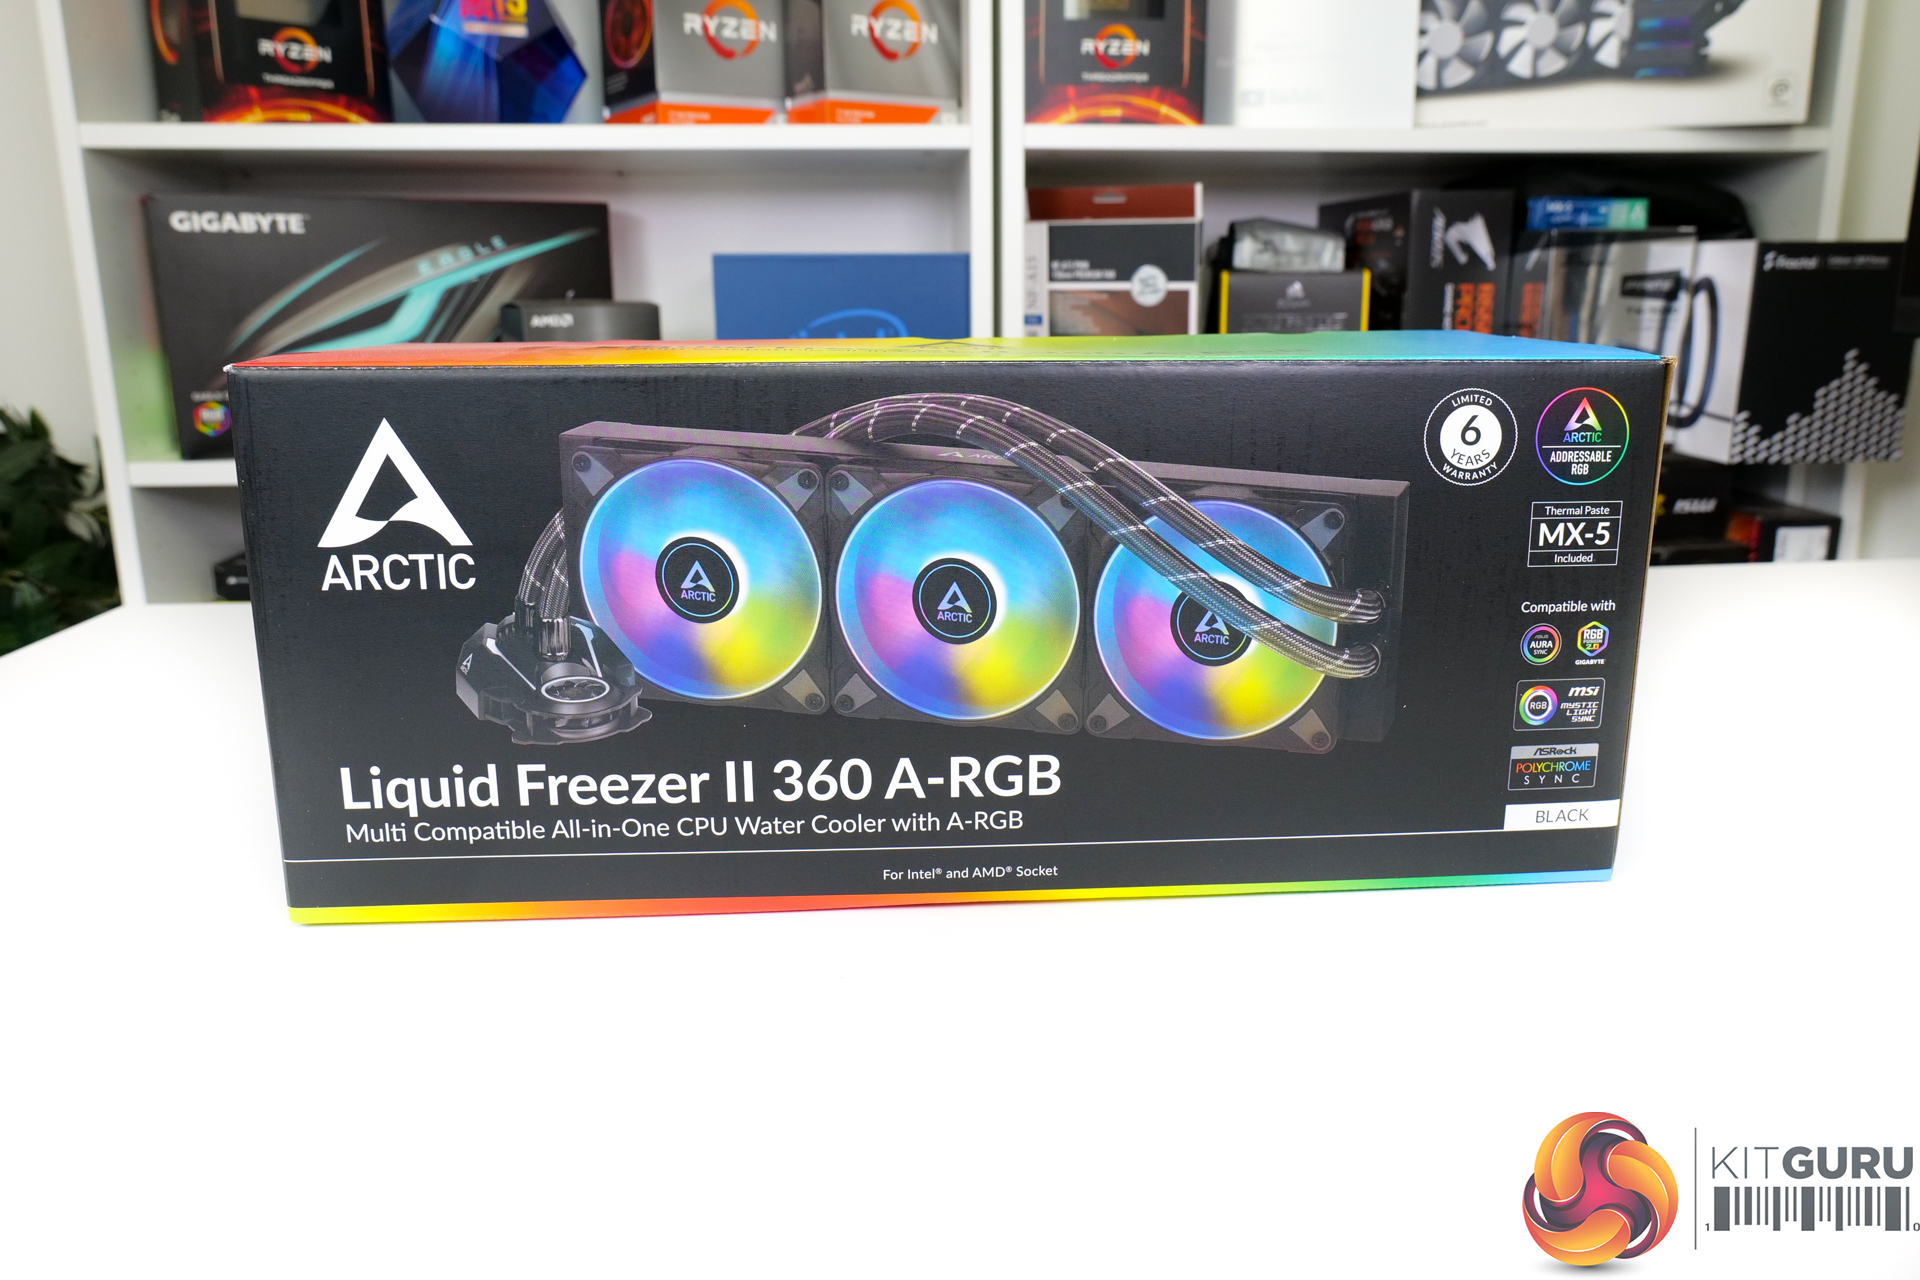 Arctic Liquid Freezer II 240 A-RGB Review